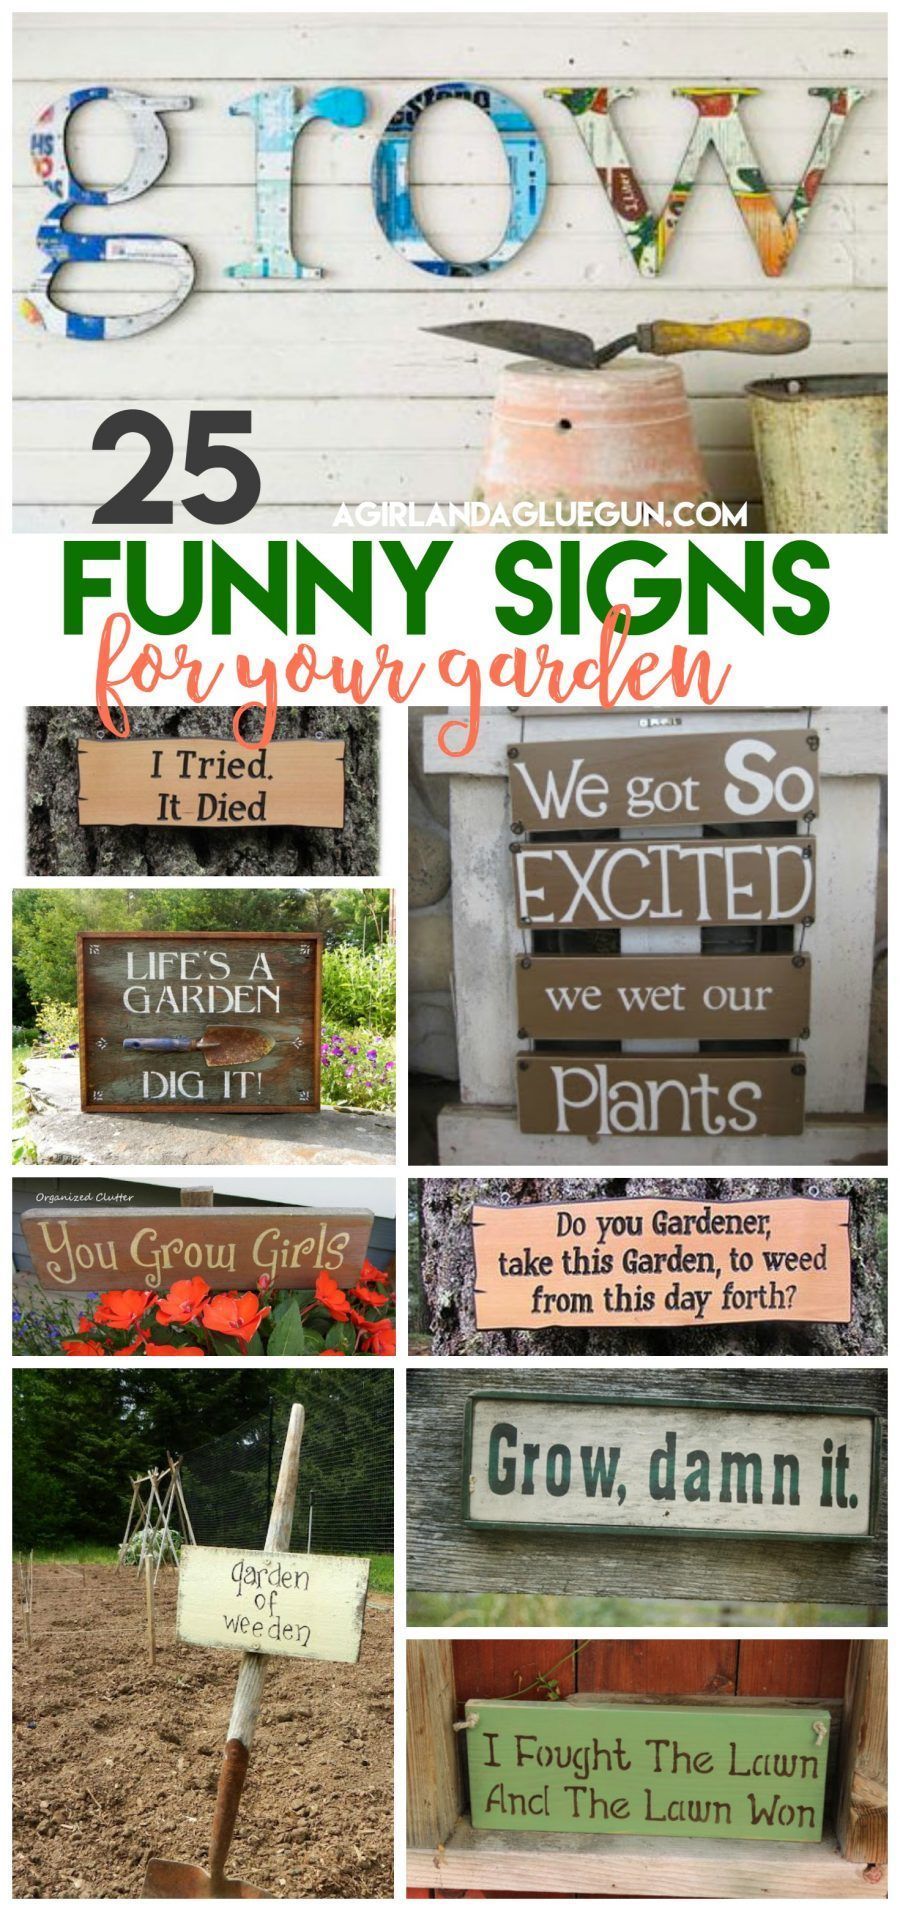 25 super funny Garden signs - A girl and a glue gun - 25 super funny Garden signs - A girl and a glue gun -   19 diy Garden signs ideas